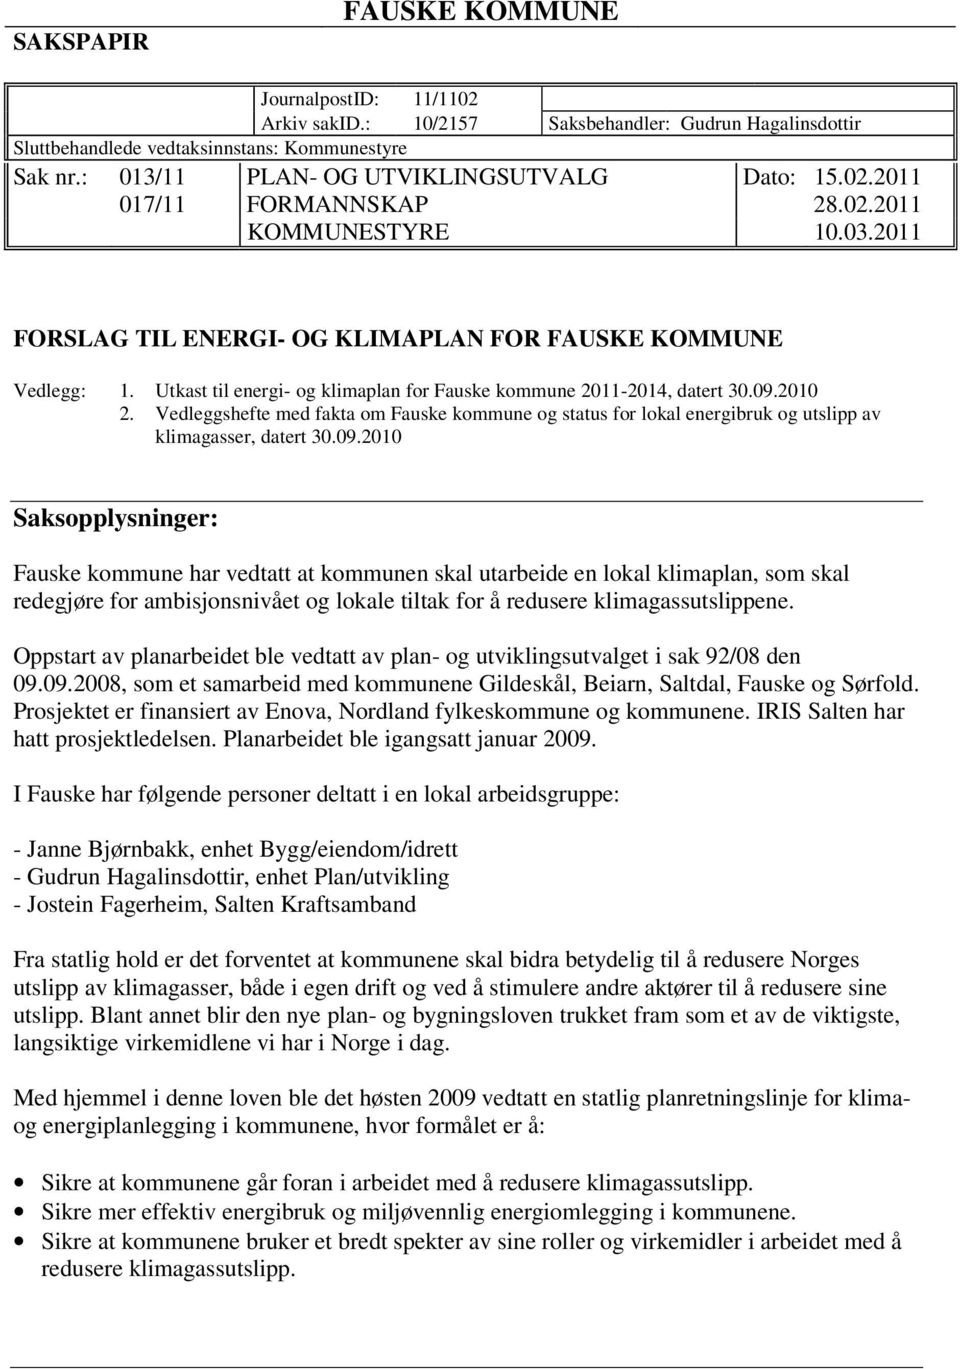 Utkast til energi- og klimaplan for Fauske kommune 2011-2014, datert 30.09.